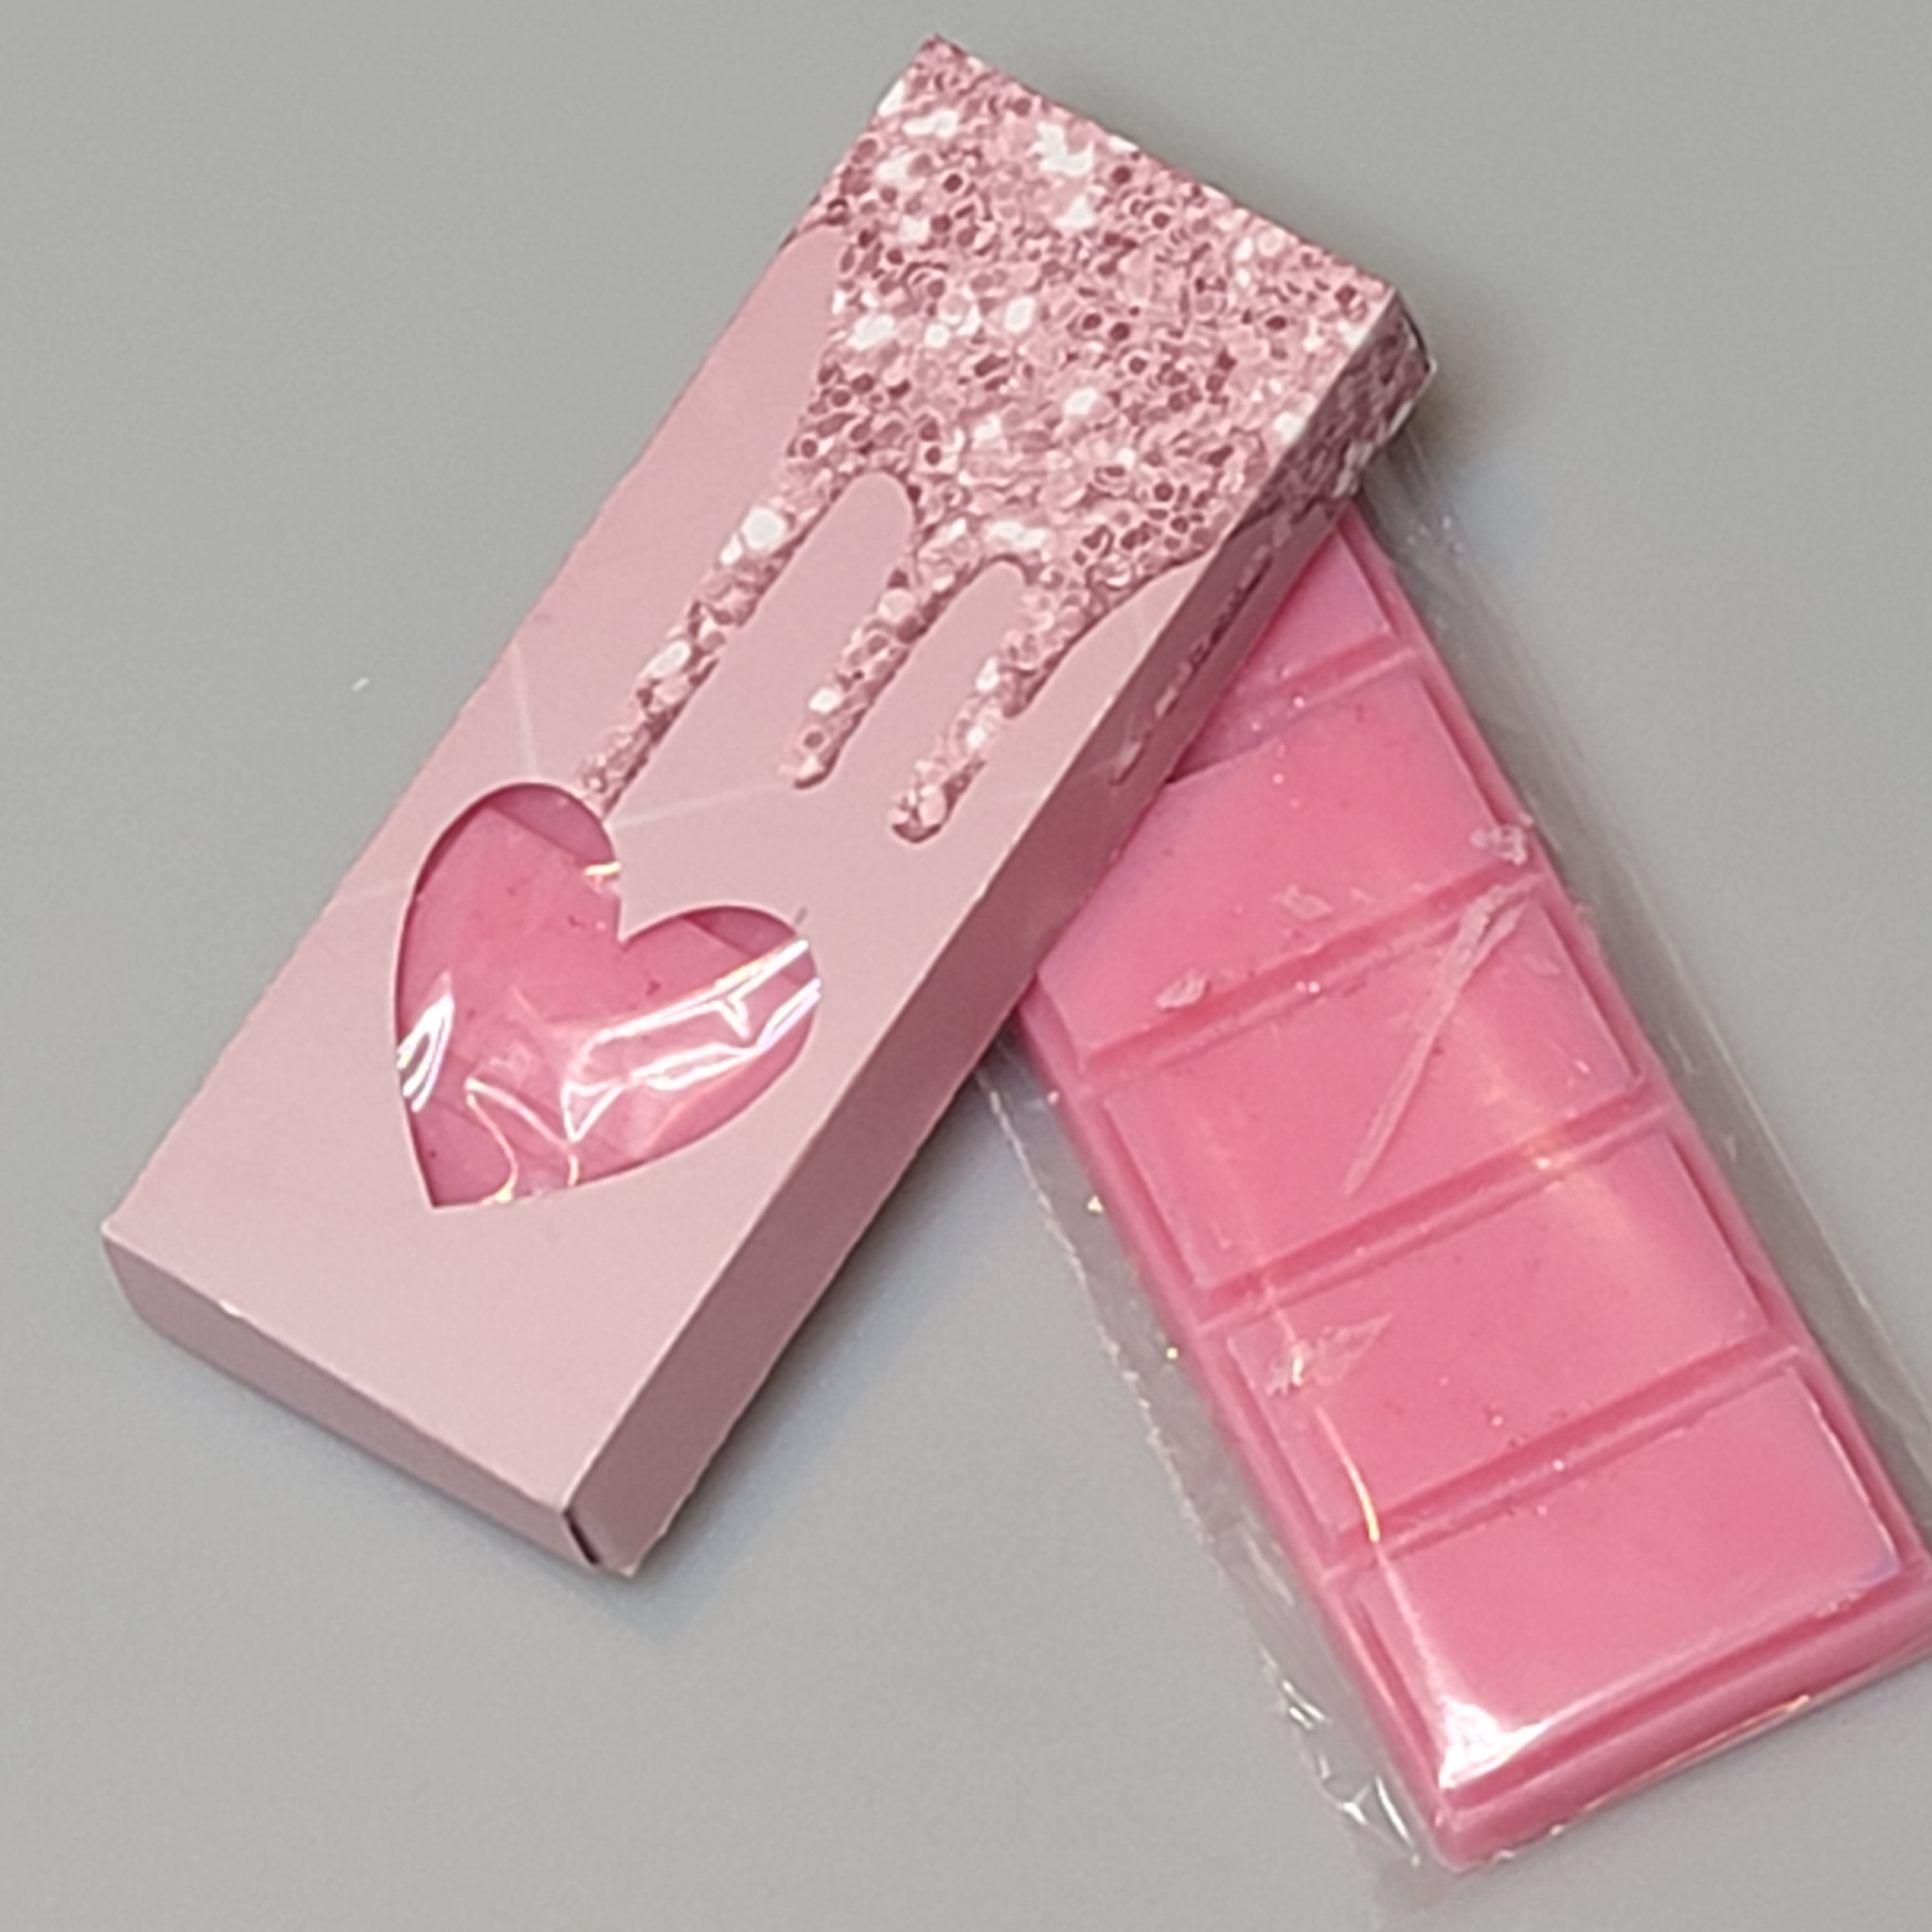 Pink Sands Wax Melts - Beyond Beauty Bliss